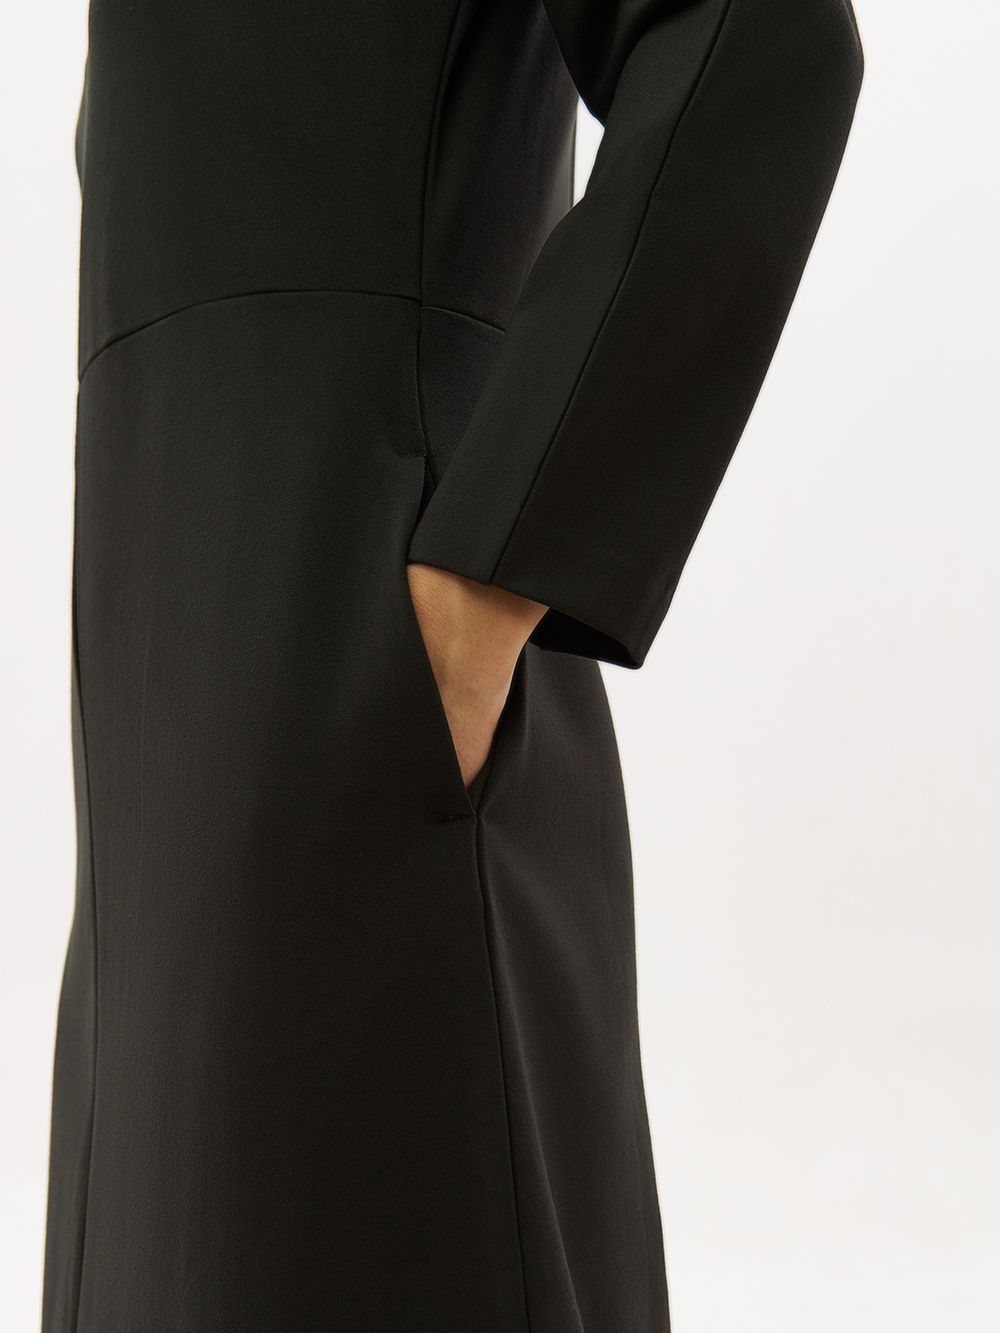 Трикотажное платье PAVO со светоотражающим брендингом. Изображение 4